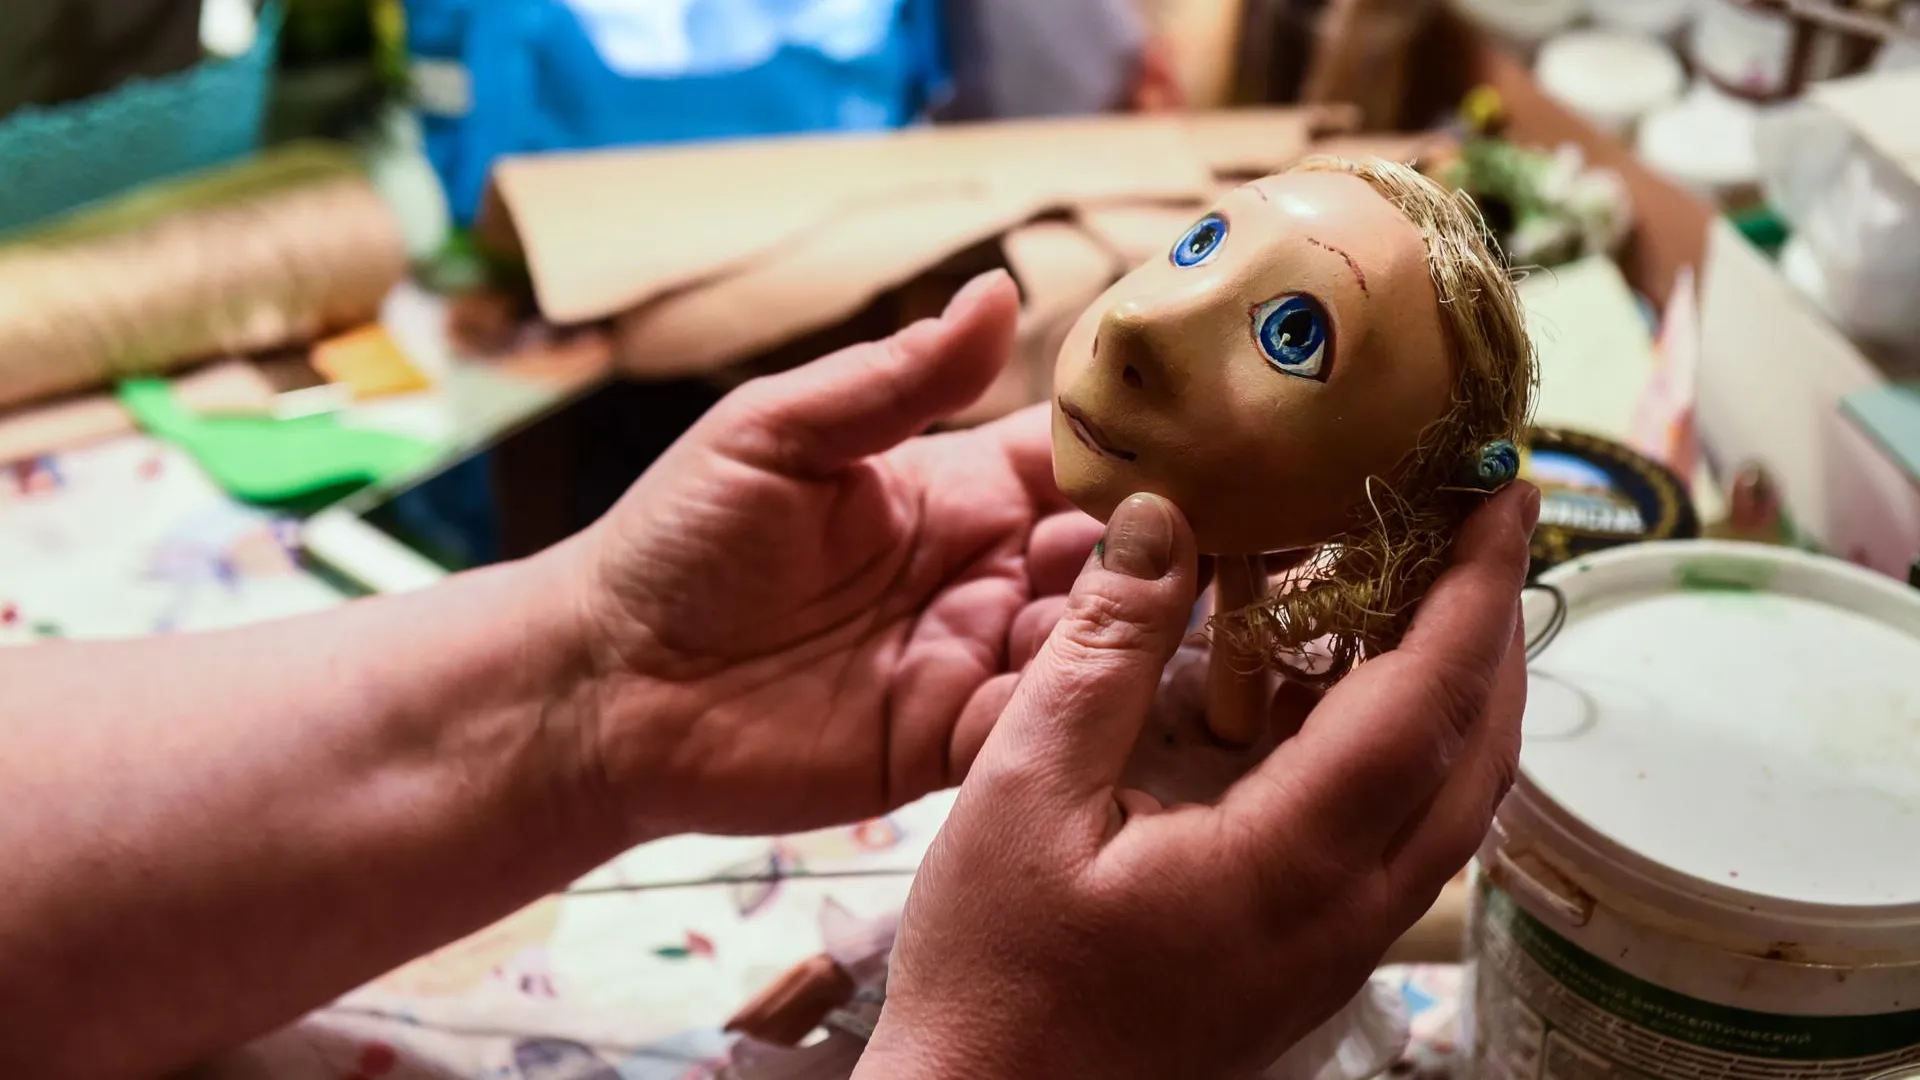 Куда сводить детей на спектакль: популярные кукольные театры Московского региона